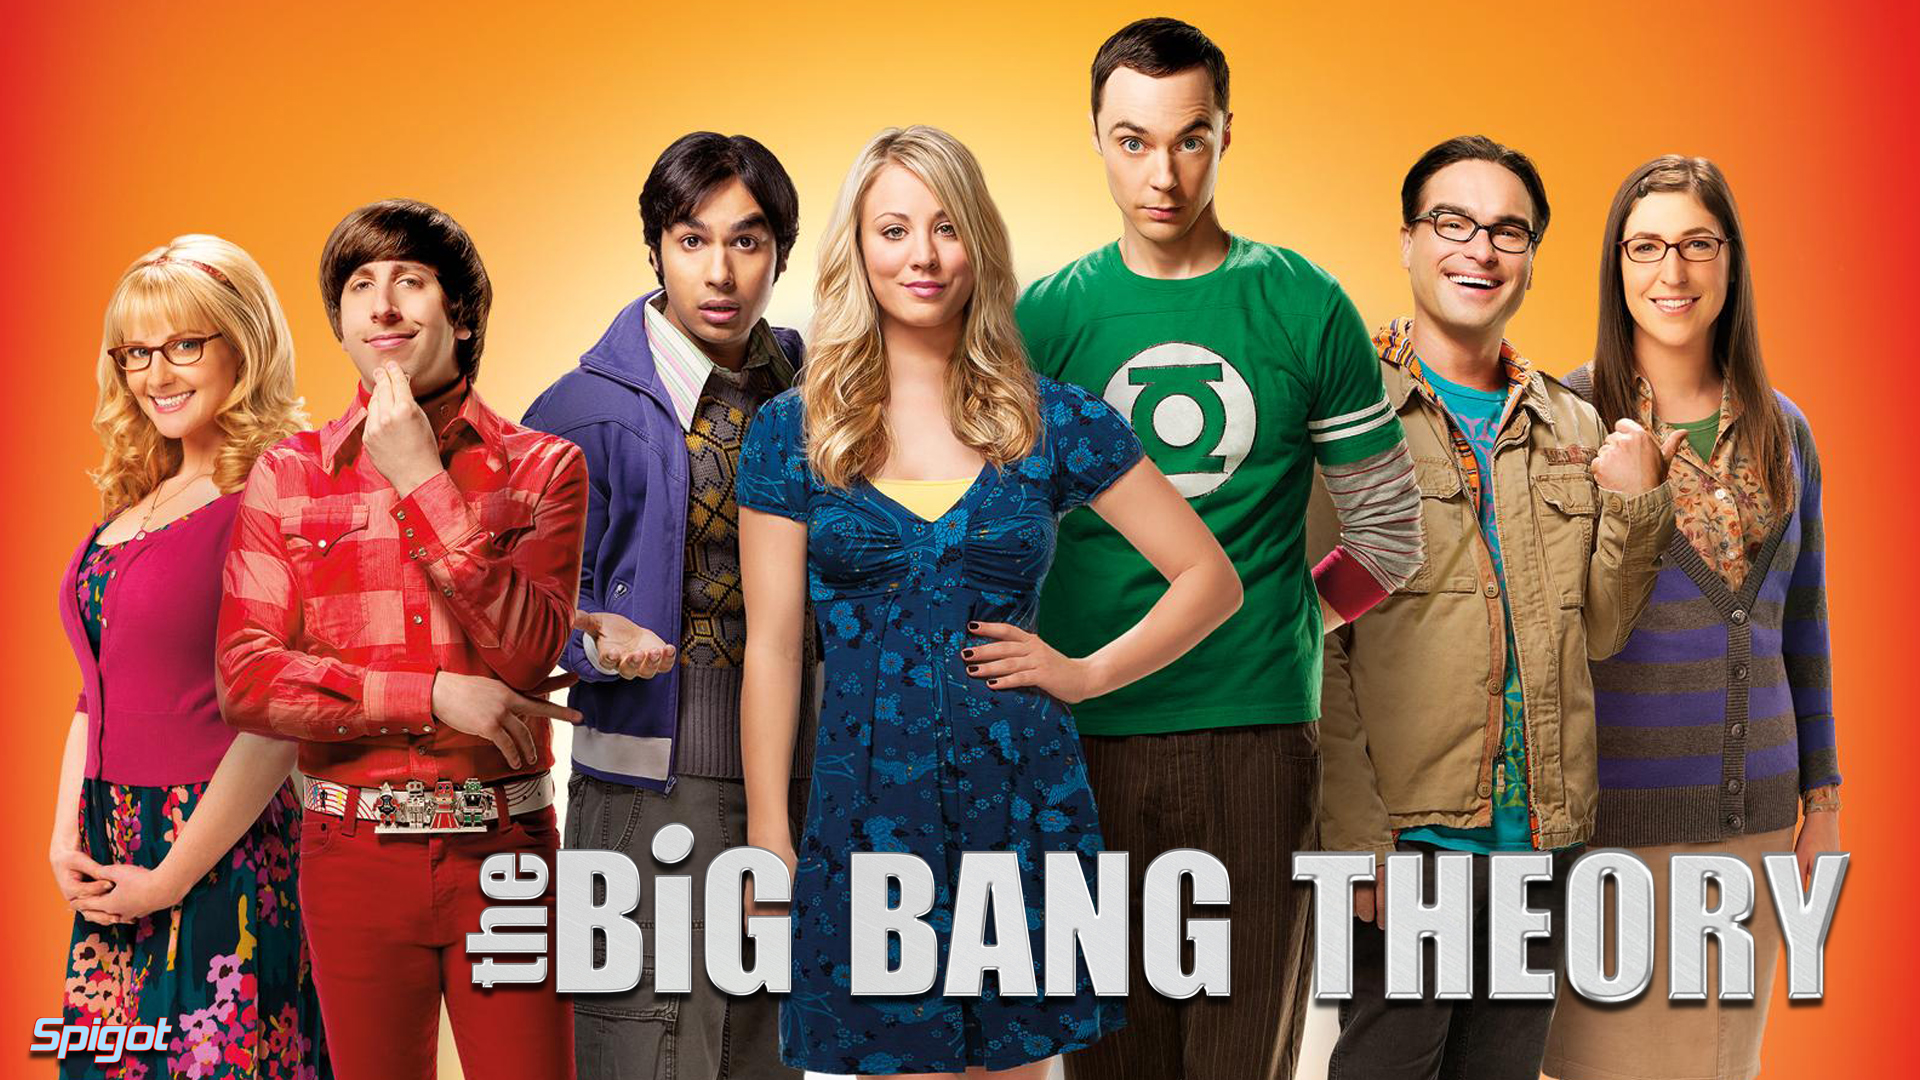 The Big Bang Theory «The Big Bang Theory» Chega Ao Fim Depois De 12 Temporadas